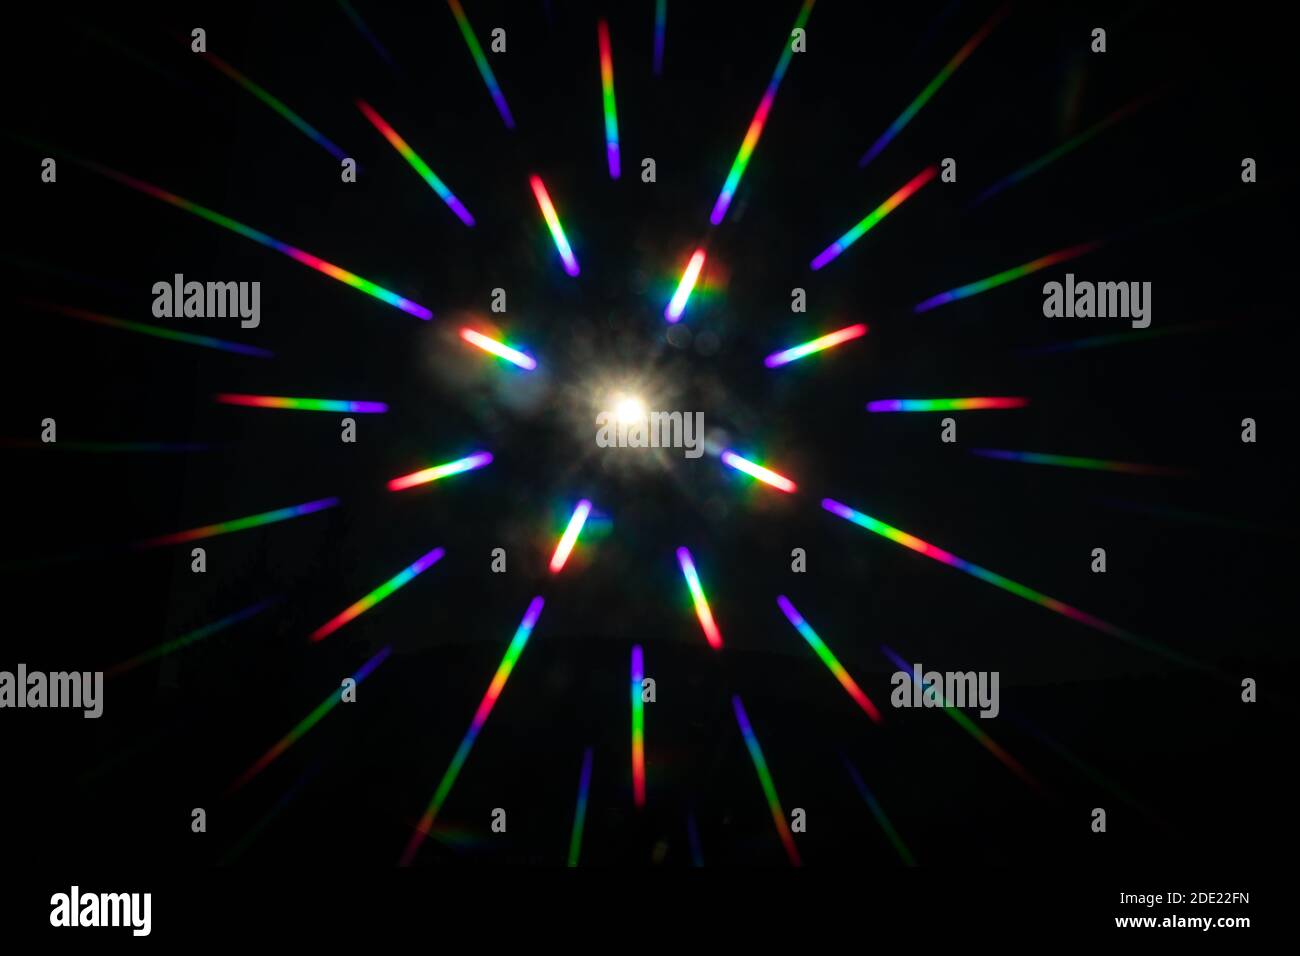 la sorgente luminosa puntiforme riflette i colori dell'arcobaleno tutte le direzioni Foto Stock